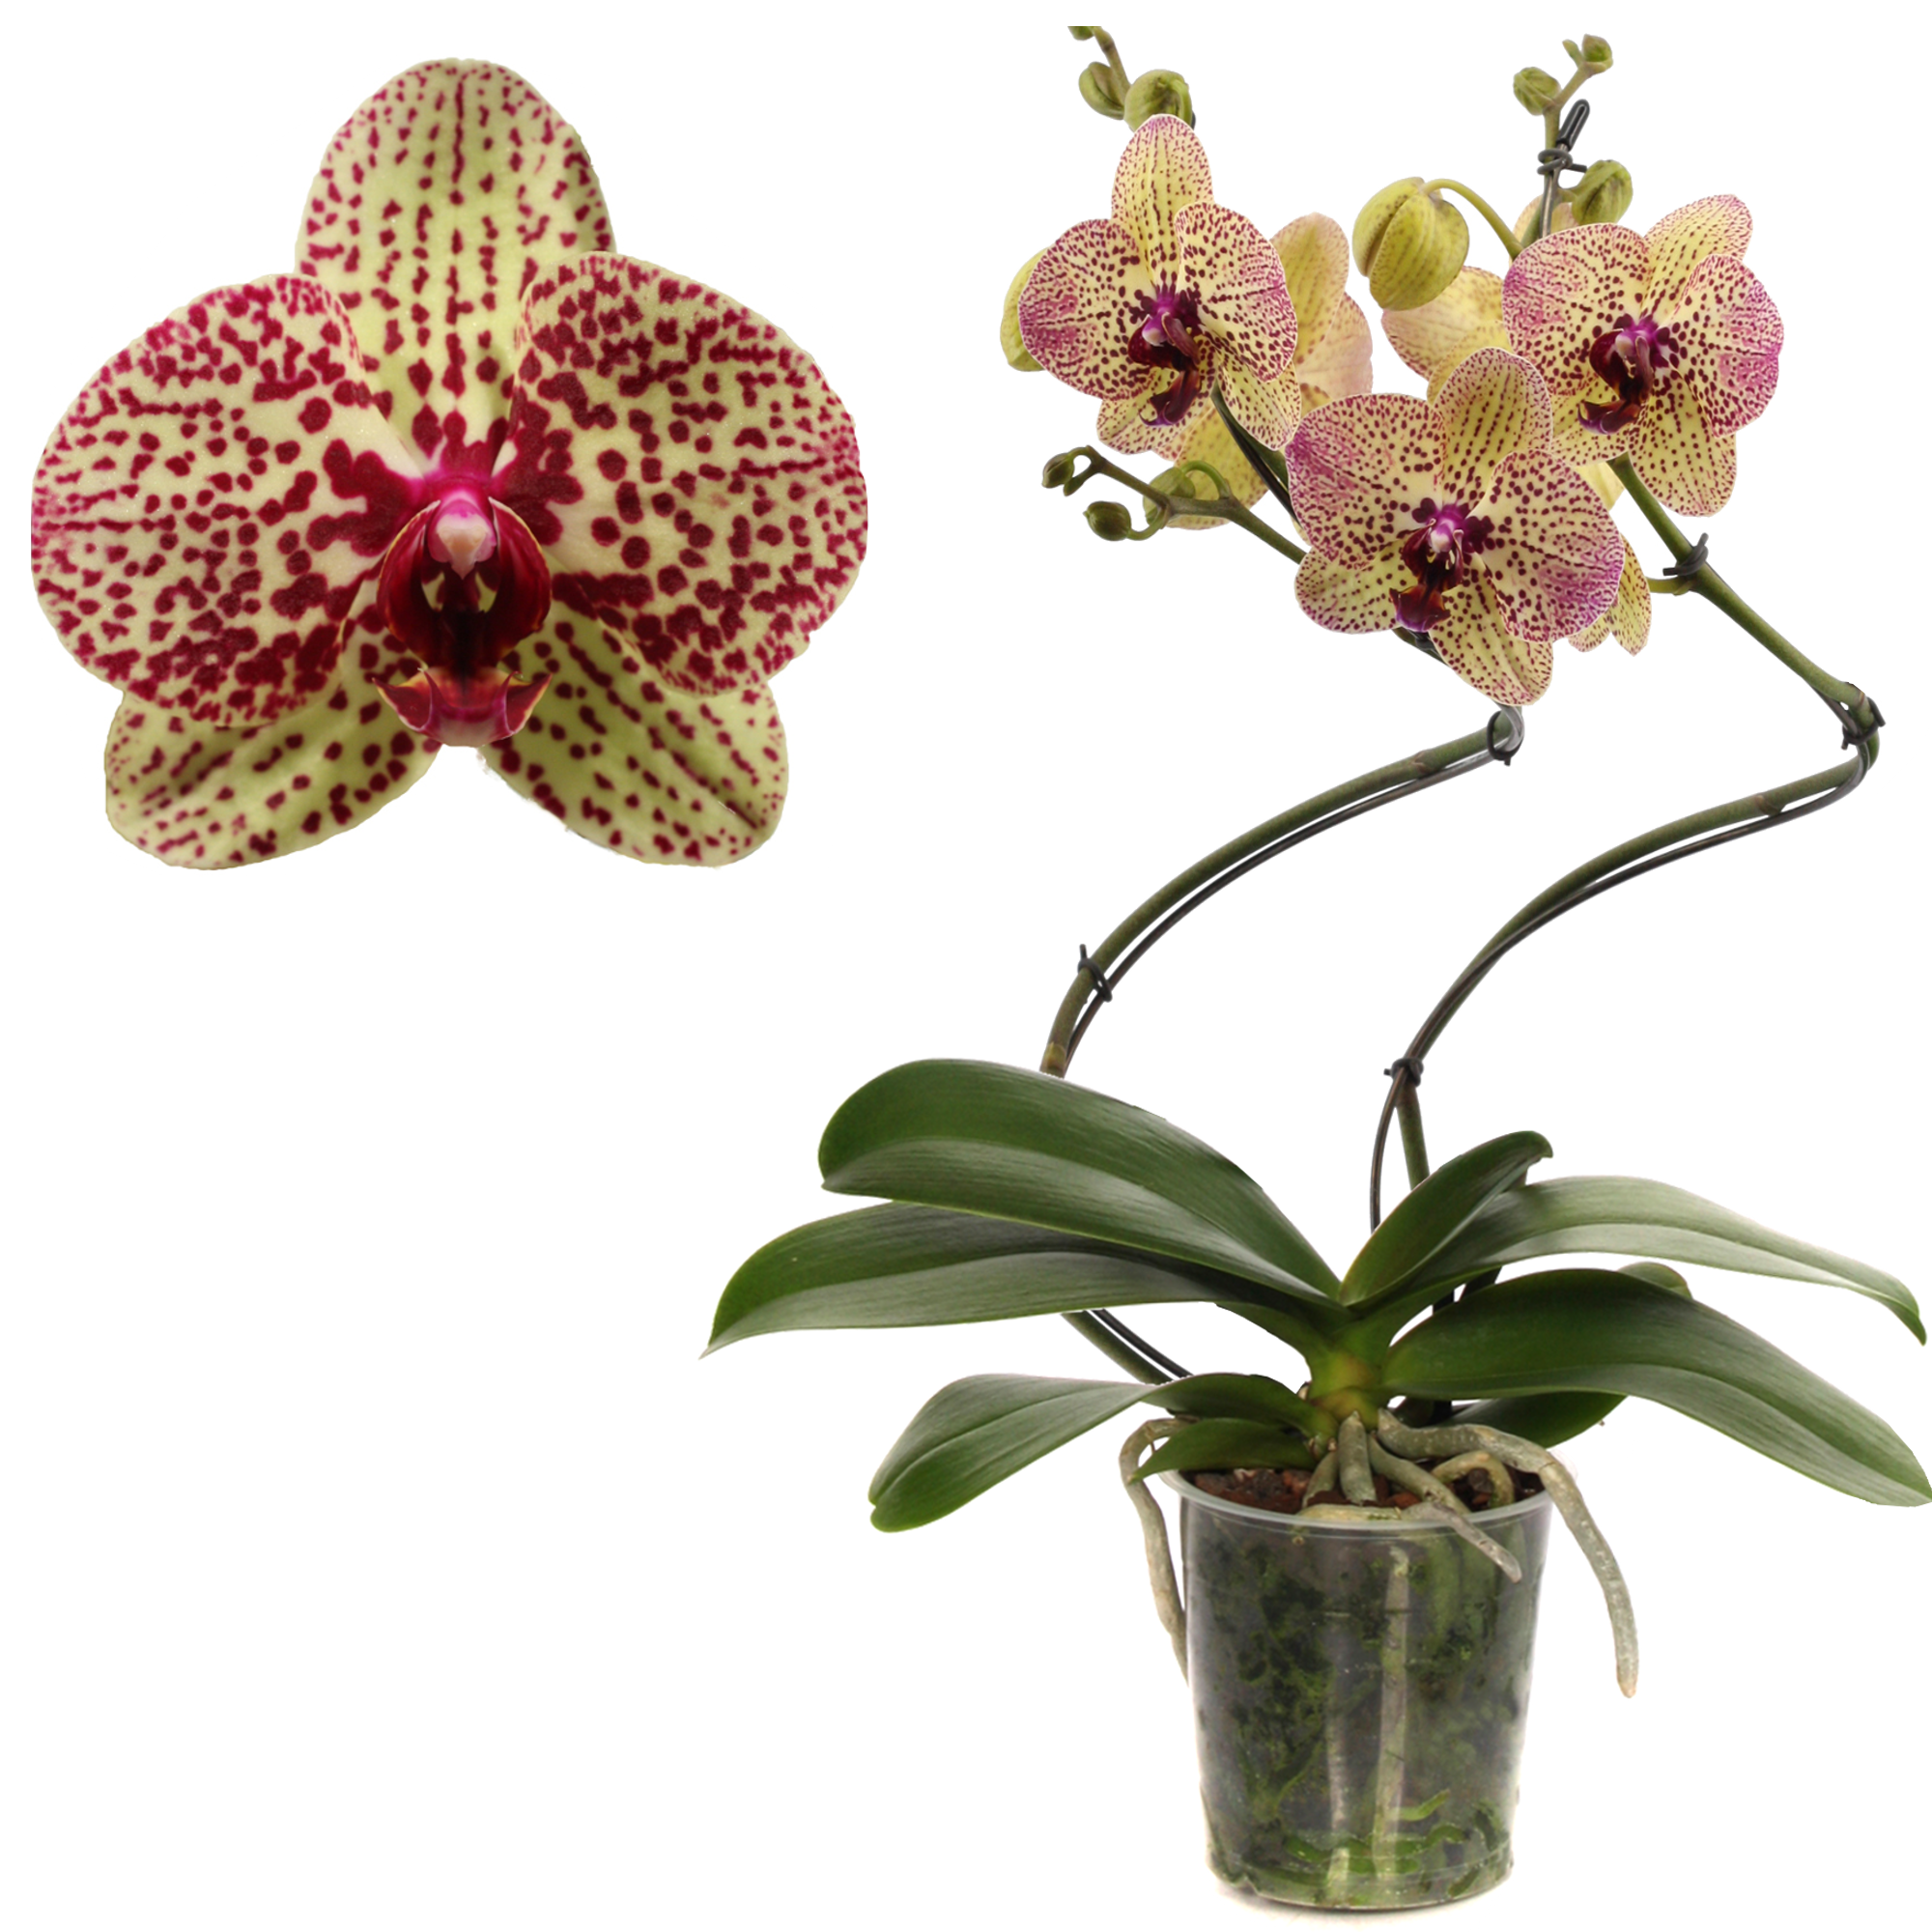 Schmetterlingsorchidee 'Kleopatra ' 2 Rispen pink, 12 cm Topf + product picture